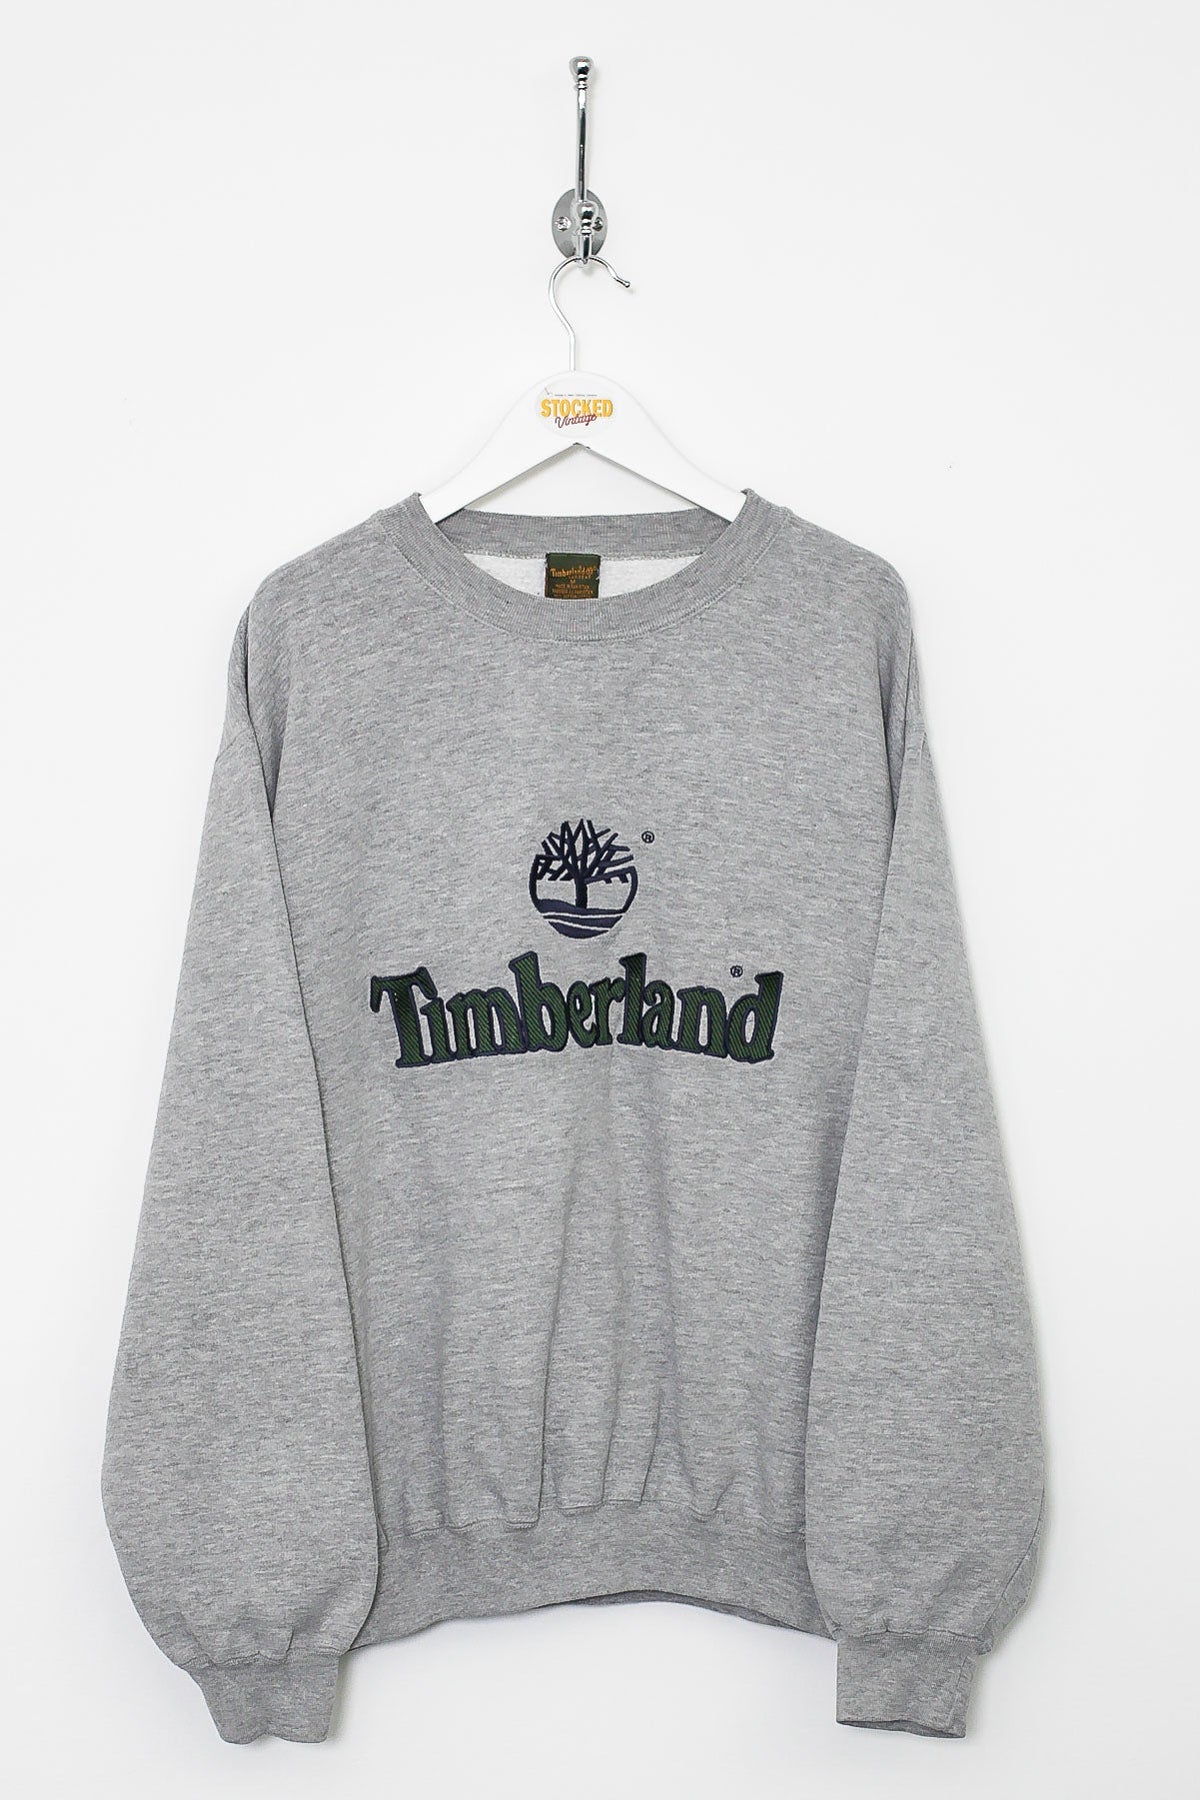 00s Timberland Sweatshirt (M)